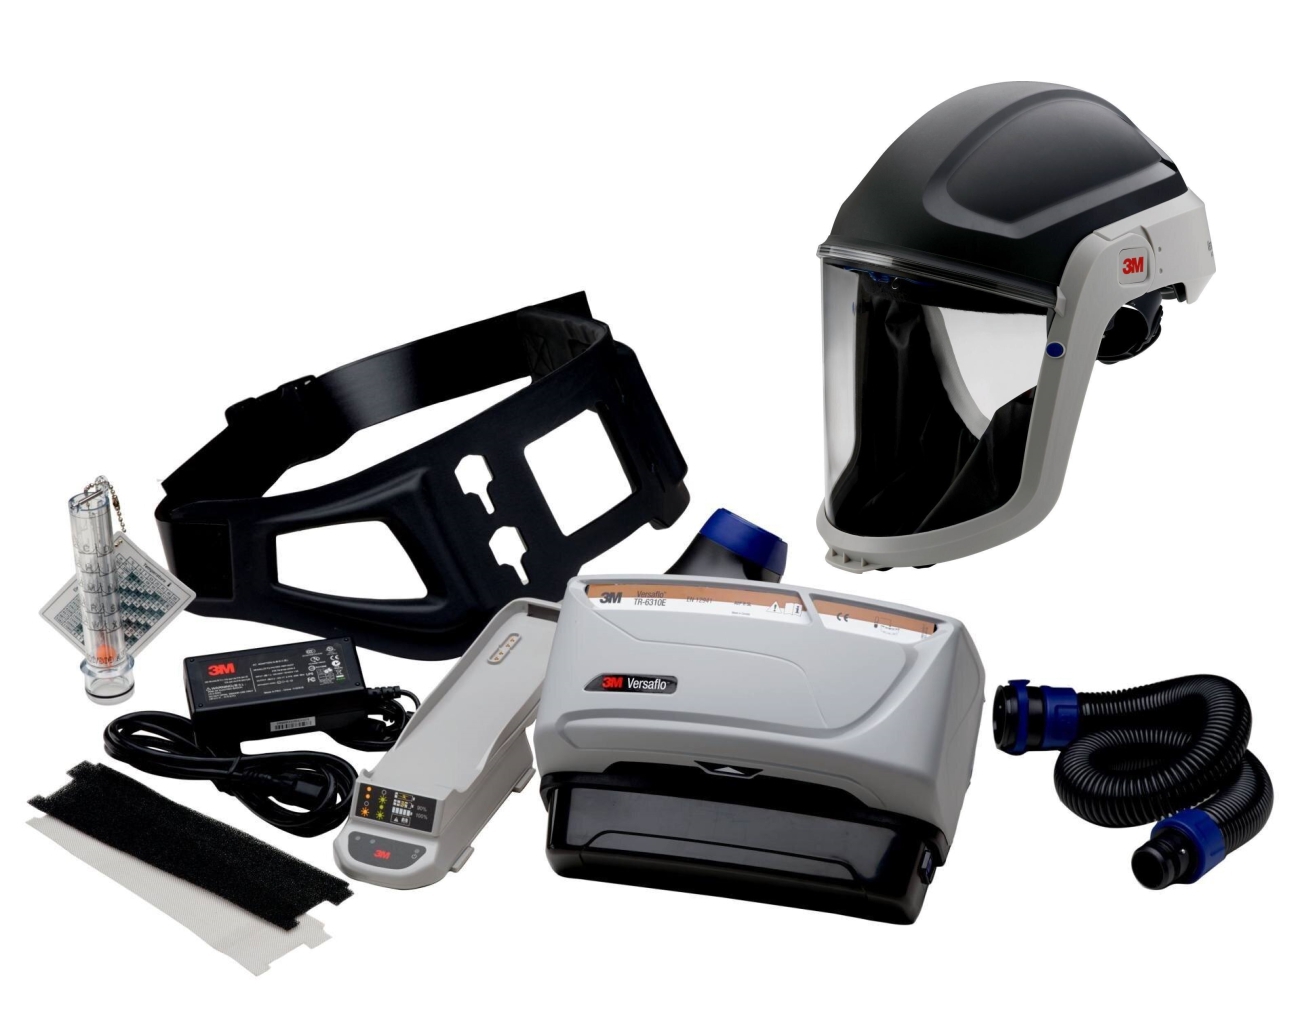 3M TR-619+ Kit de démarrage Versaflo incluant TR-602E, accessoires et 3M Versaflo Casque de protection M306 avec joint facial confort et visière en polycarbonate, transparent